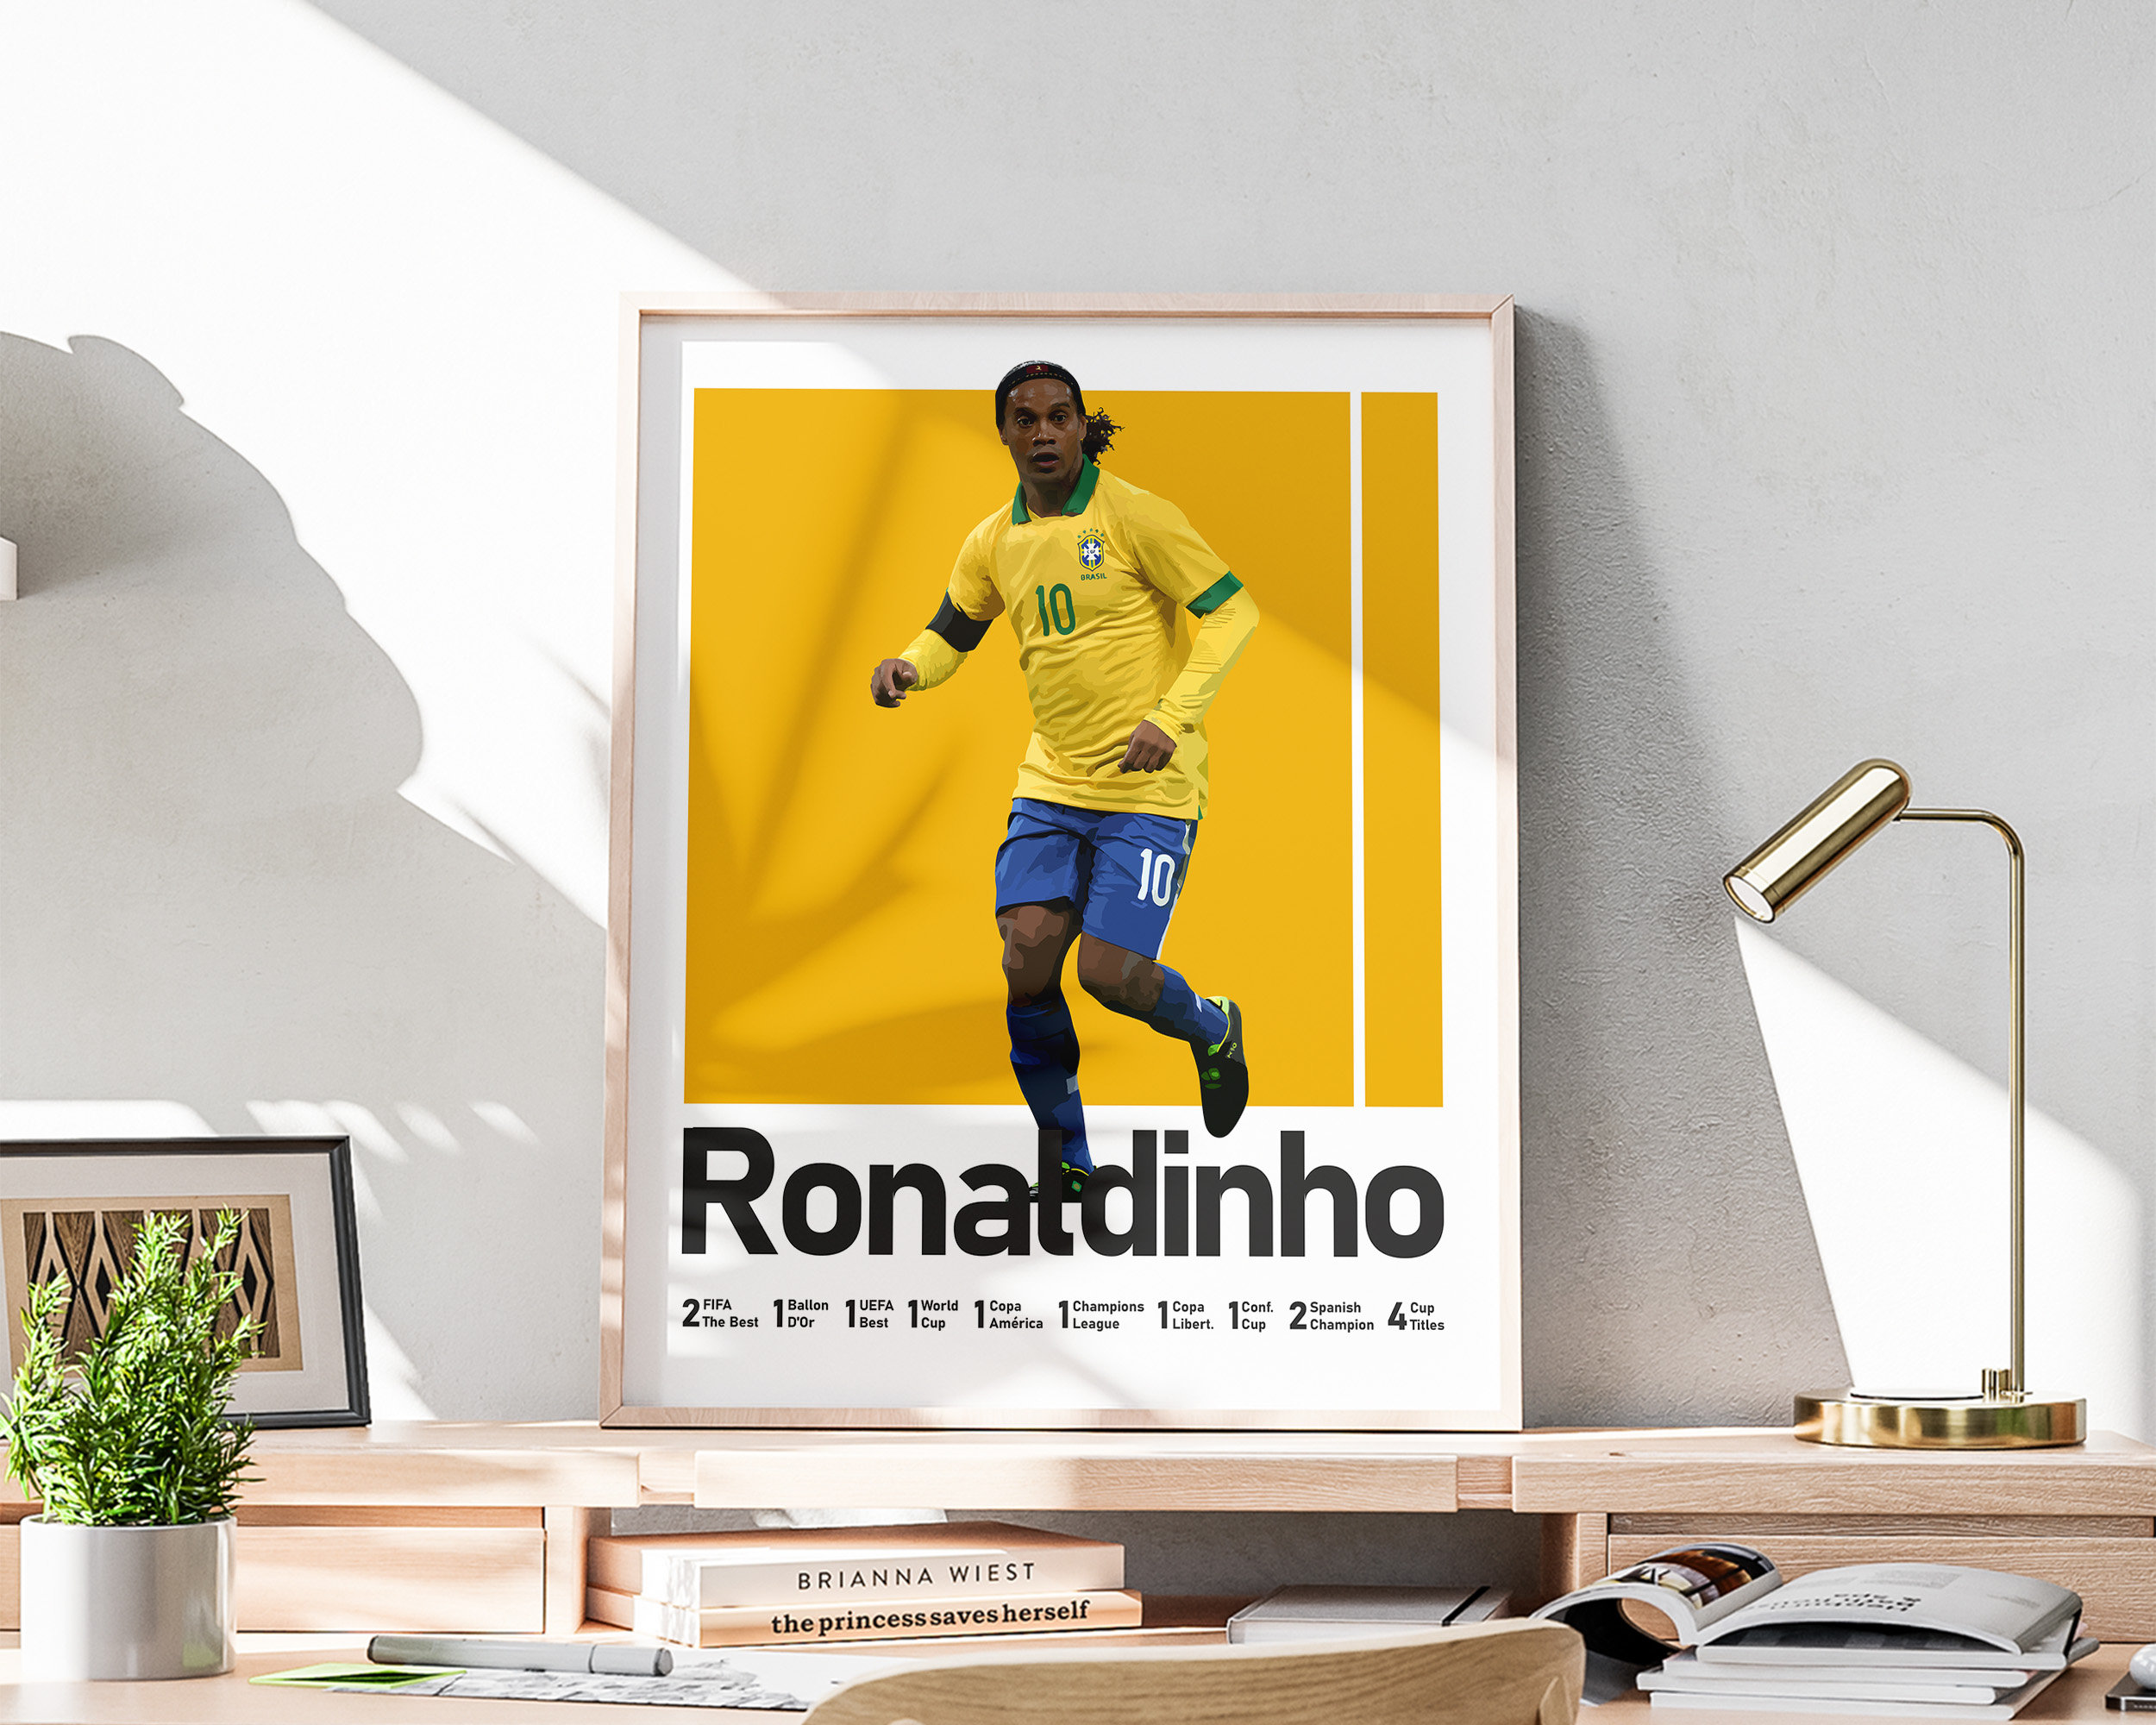 Ronaldinho Gaúcho added a new photo. - Ronaldinho Gaúcho